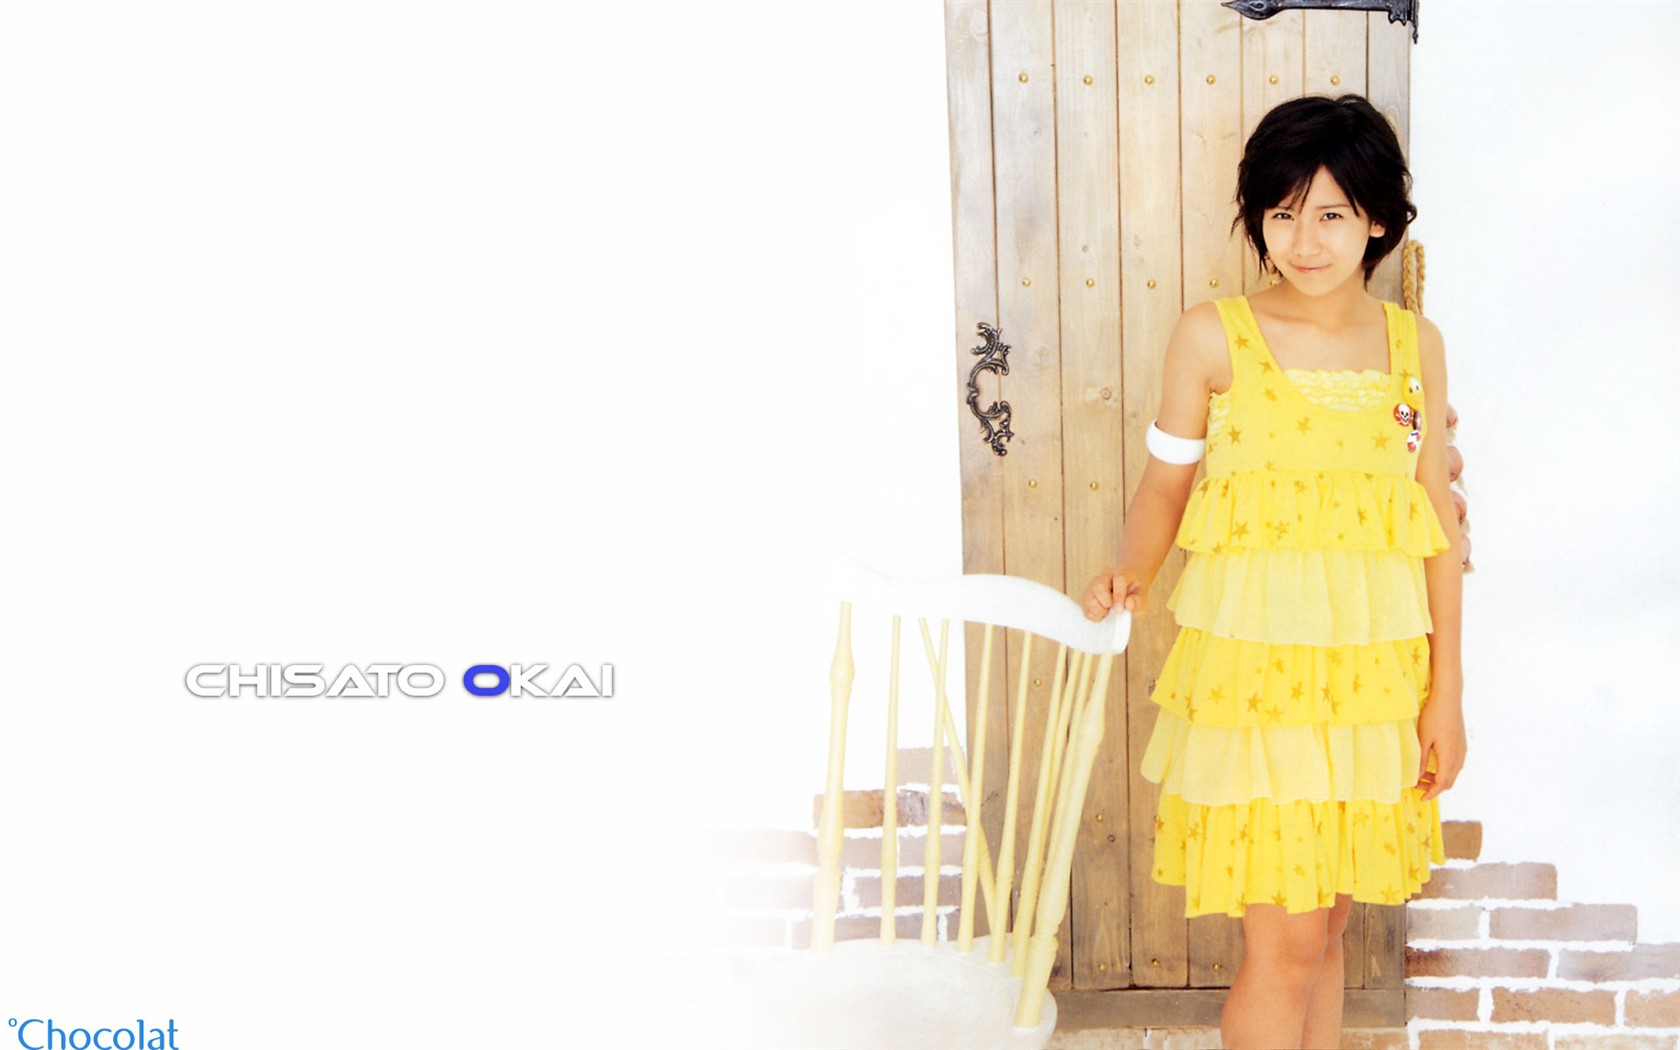 Cute belleza japonesa portafolio de fotos #6 - 1680x1050